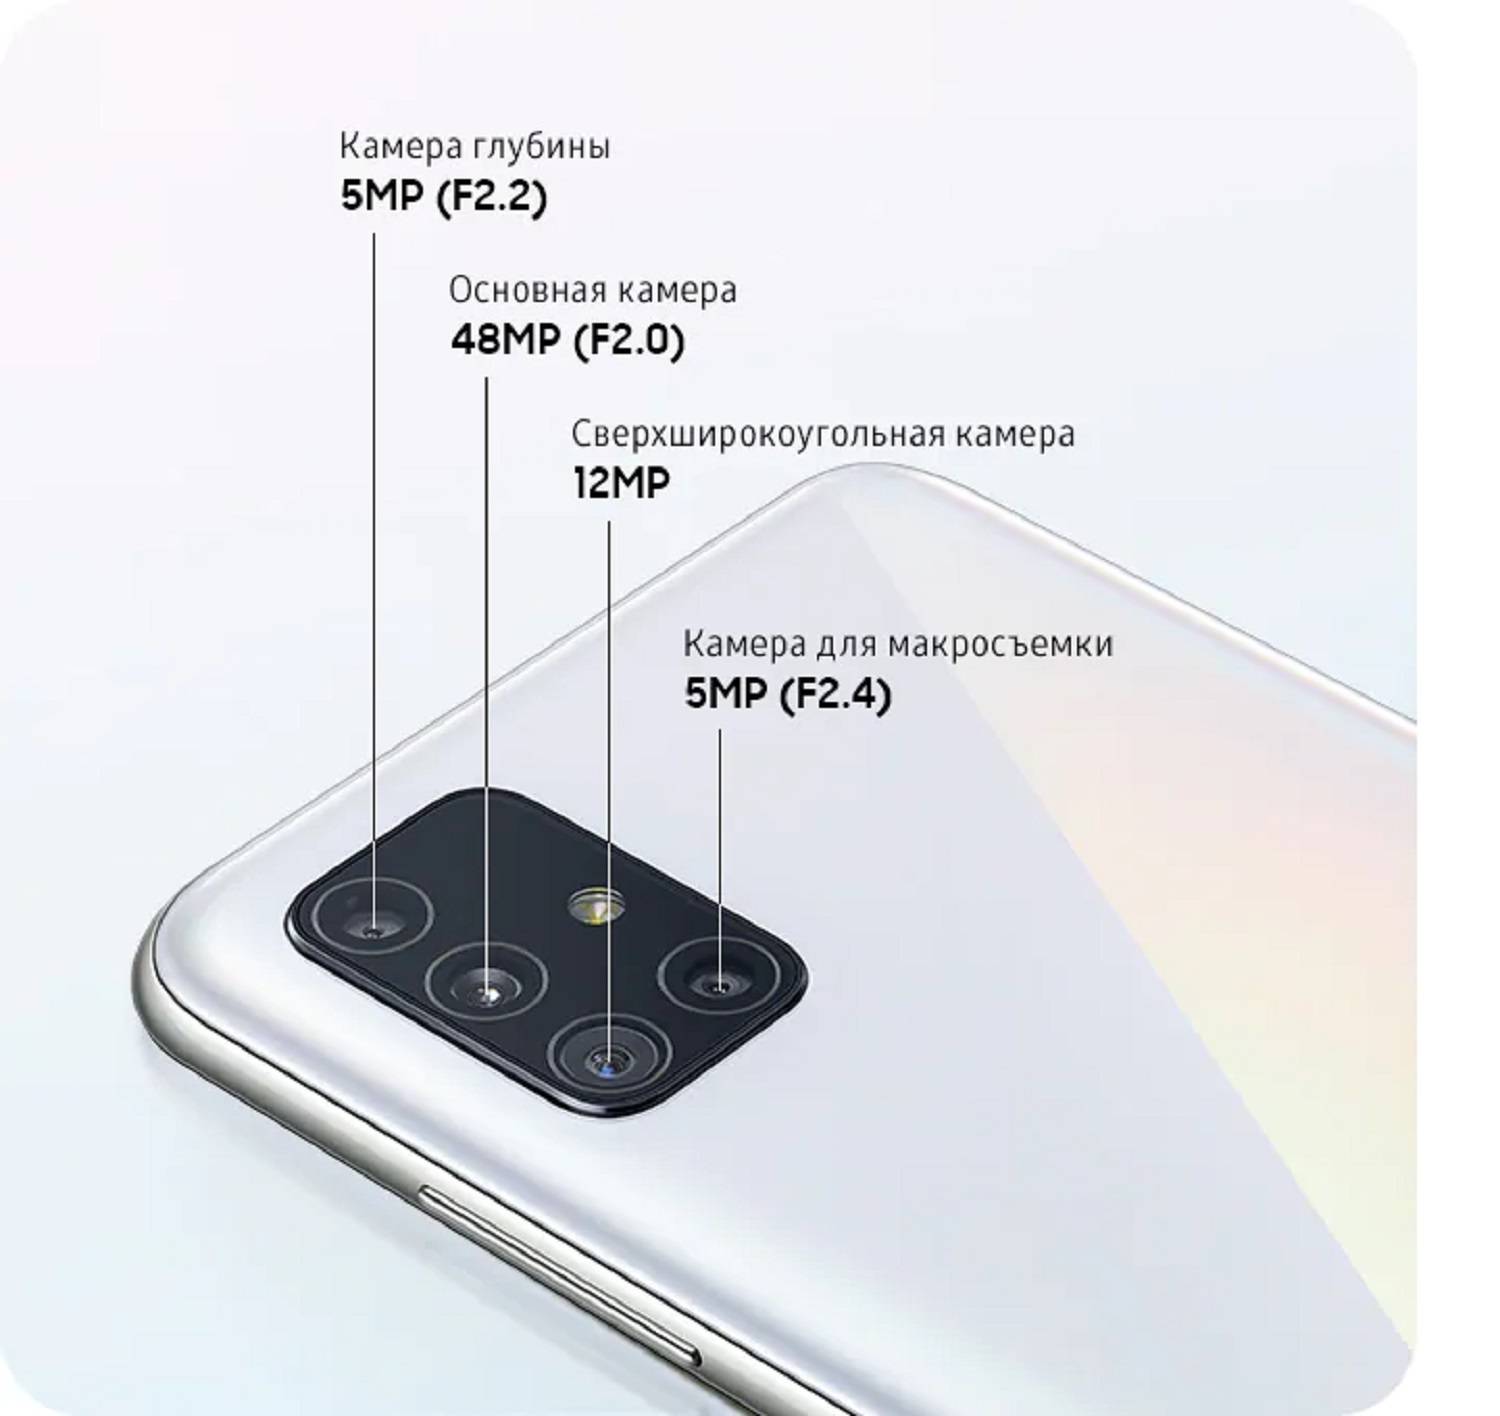 Обзор смартфона samsung galaxy a7 2017: характеристики, отзывы, возможности камеры